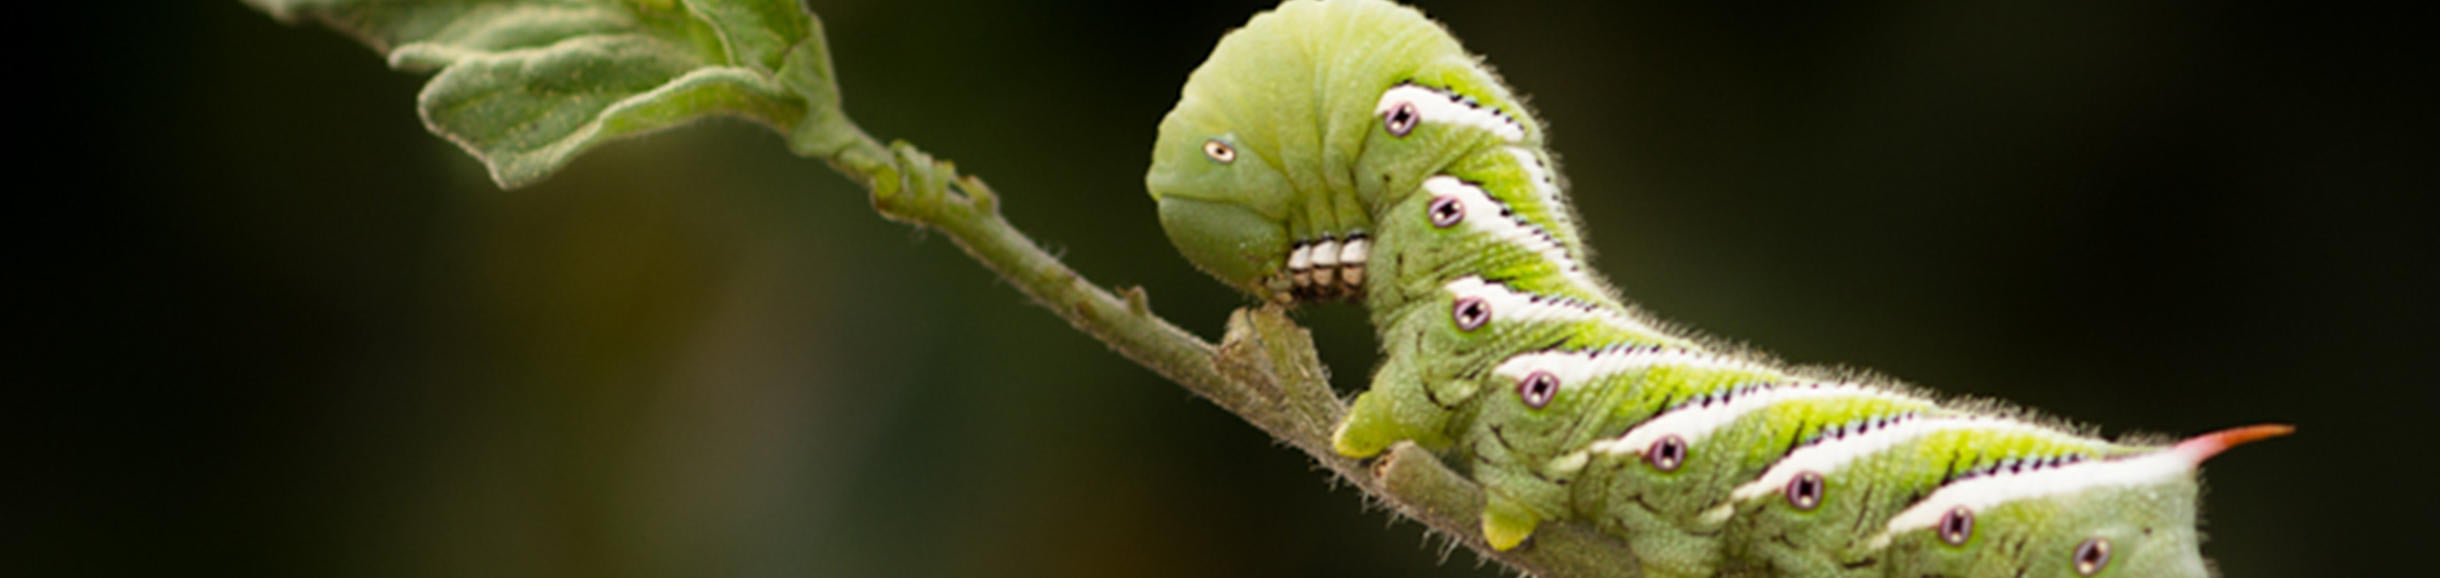 (c) ucr mike lewis green caterpillar